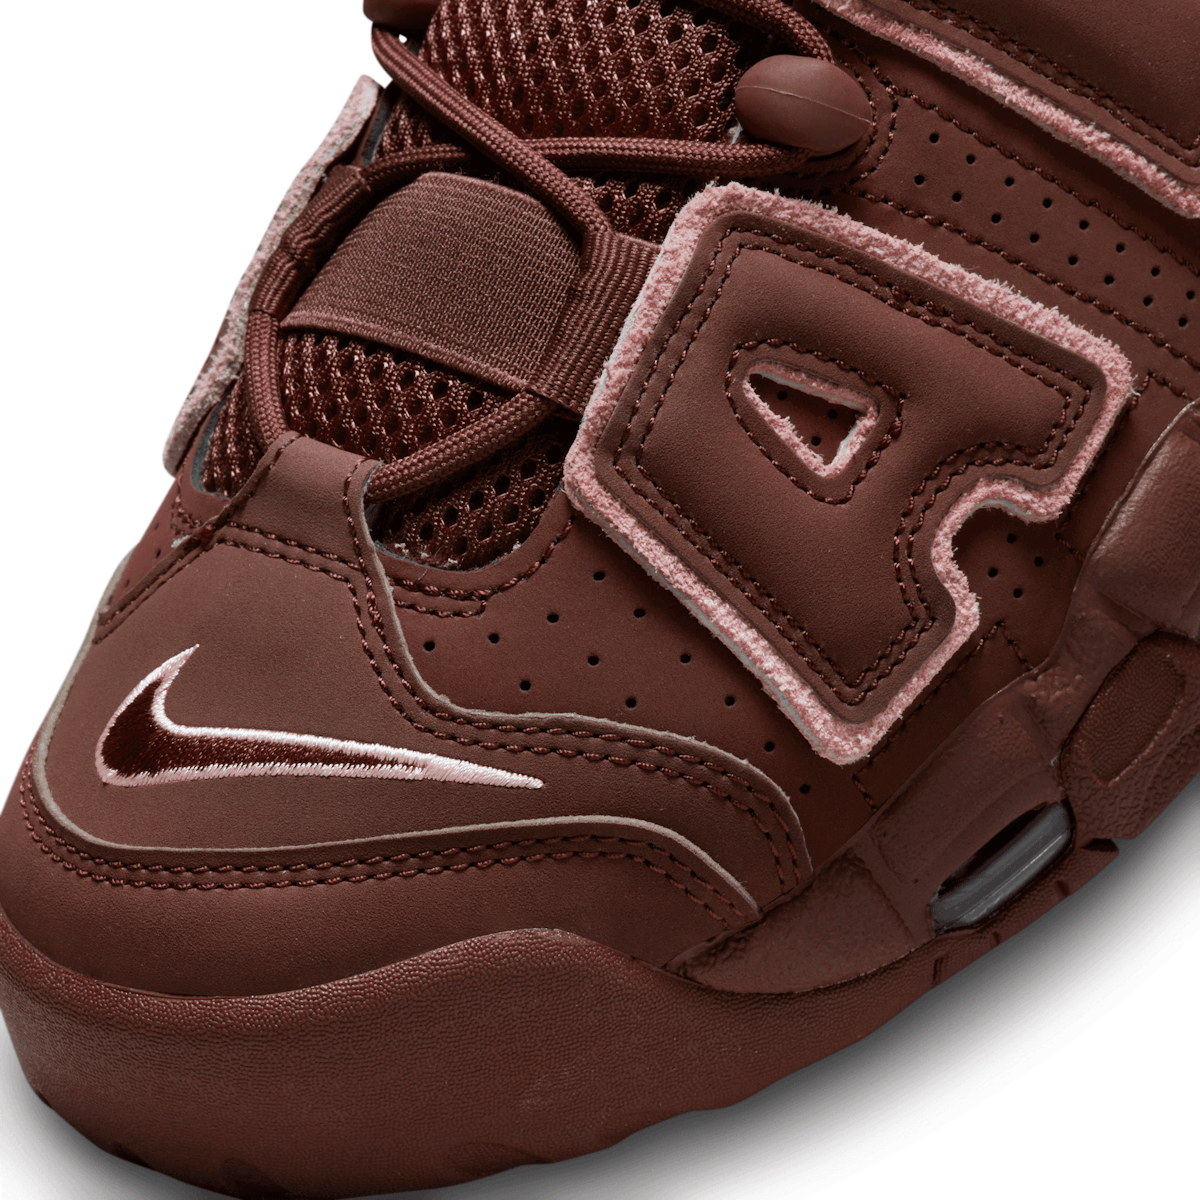 Laser Crimson' Lights Up the Nike Air More Uptempo 96 - Sneaker Freaker